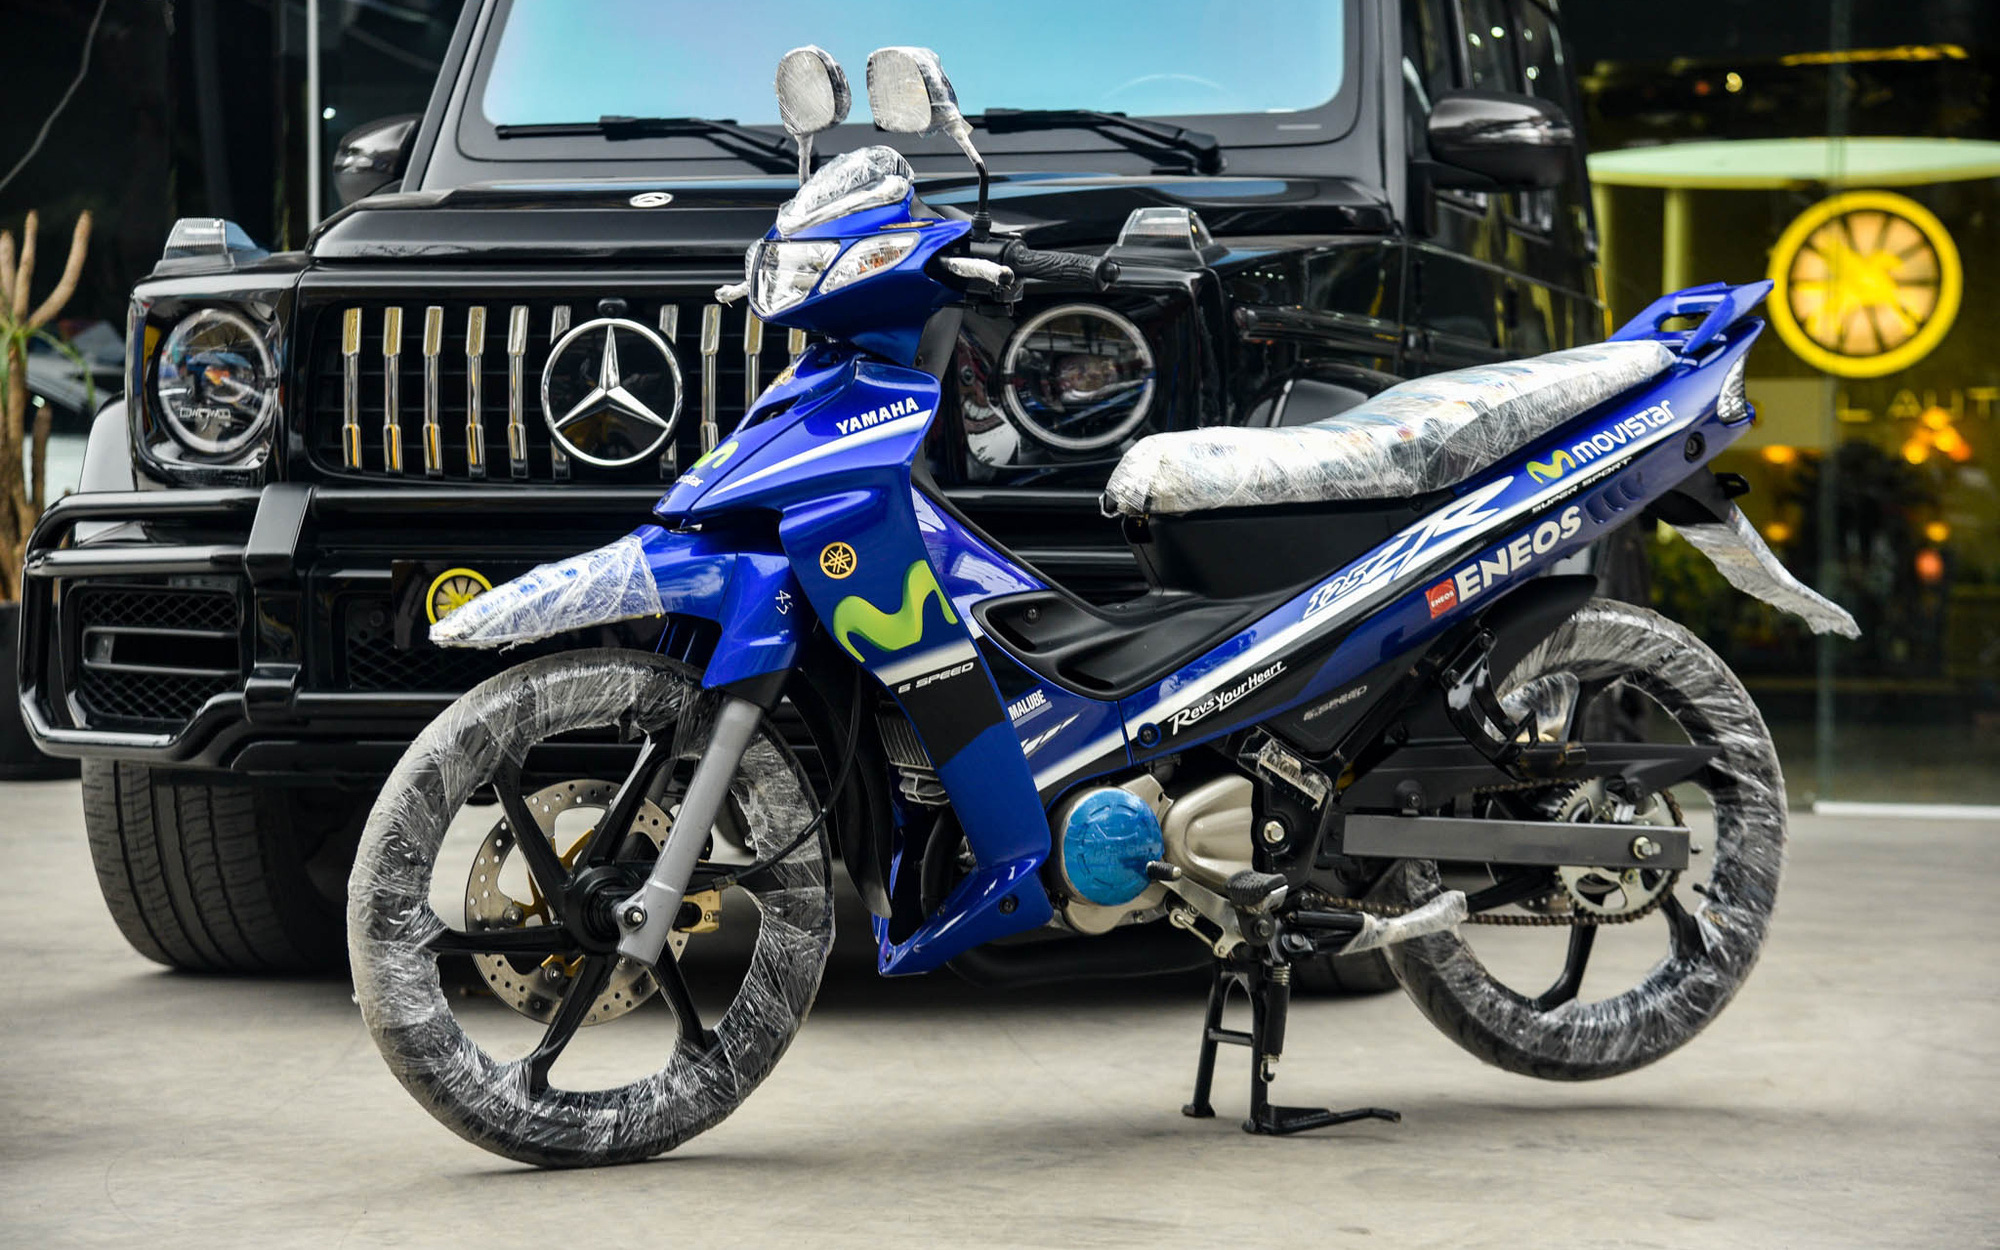 Yamaha 125ZR bản giới hạn giá khoảng 600 triệu đồng tại Hà Nội, dành cho dân chơi thích hàng độc